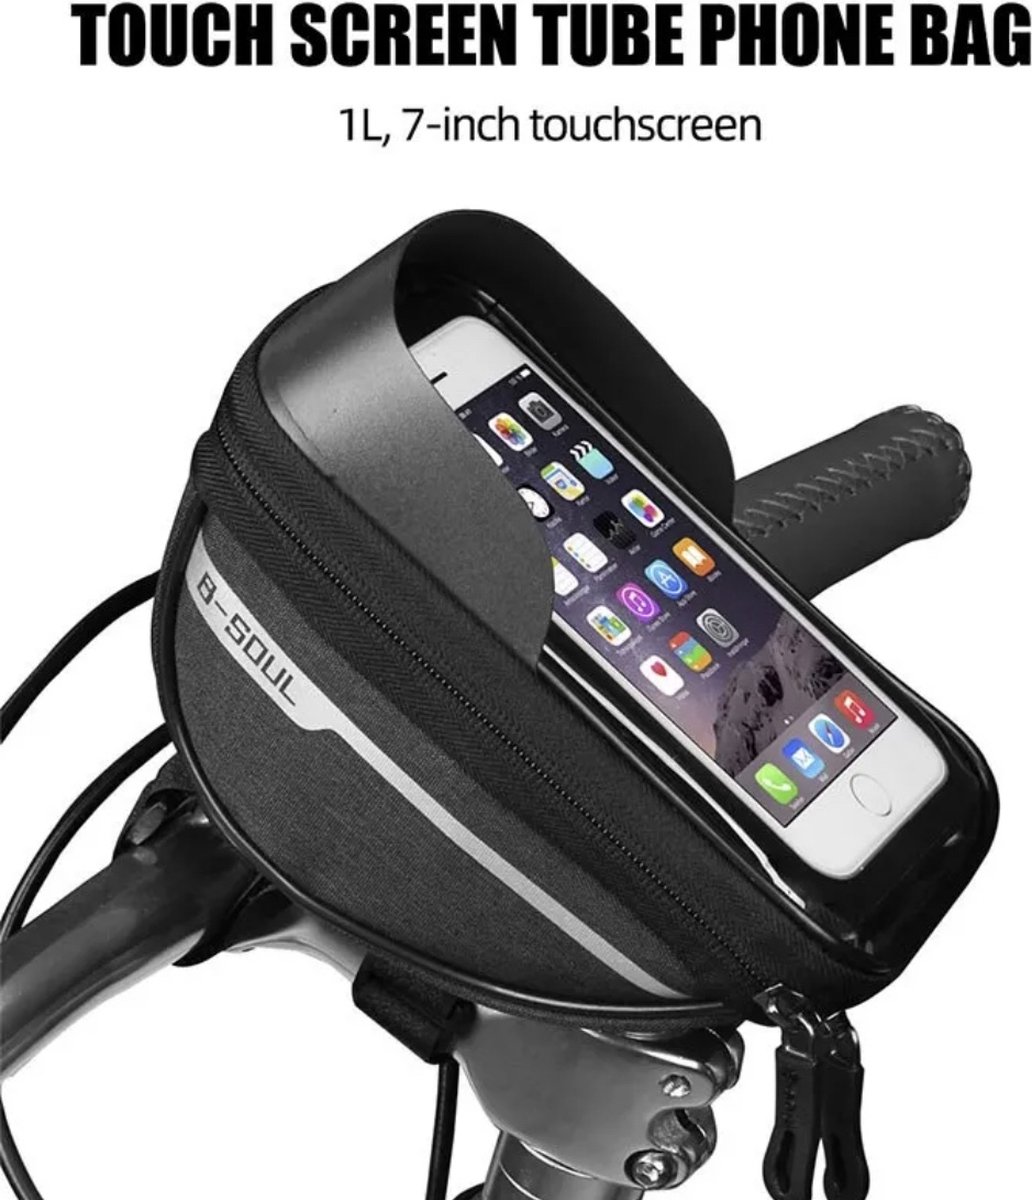 Fietstasje - fietsstuur tas - stuurtas - navigatie - mobiele telefoon houder - smartphone fietstas houder - handsfree - veilig - afneembaar fietsframe tas - waterproof